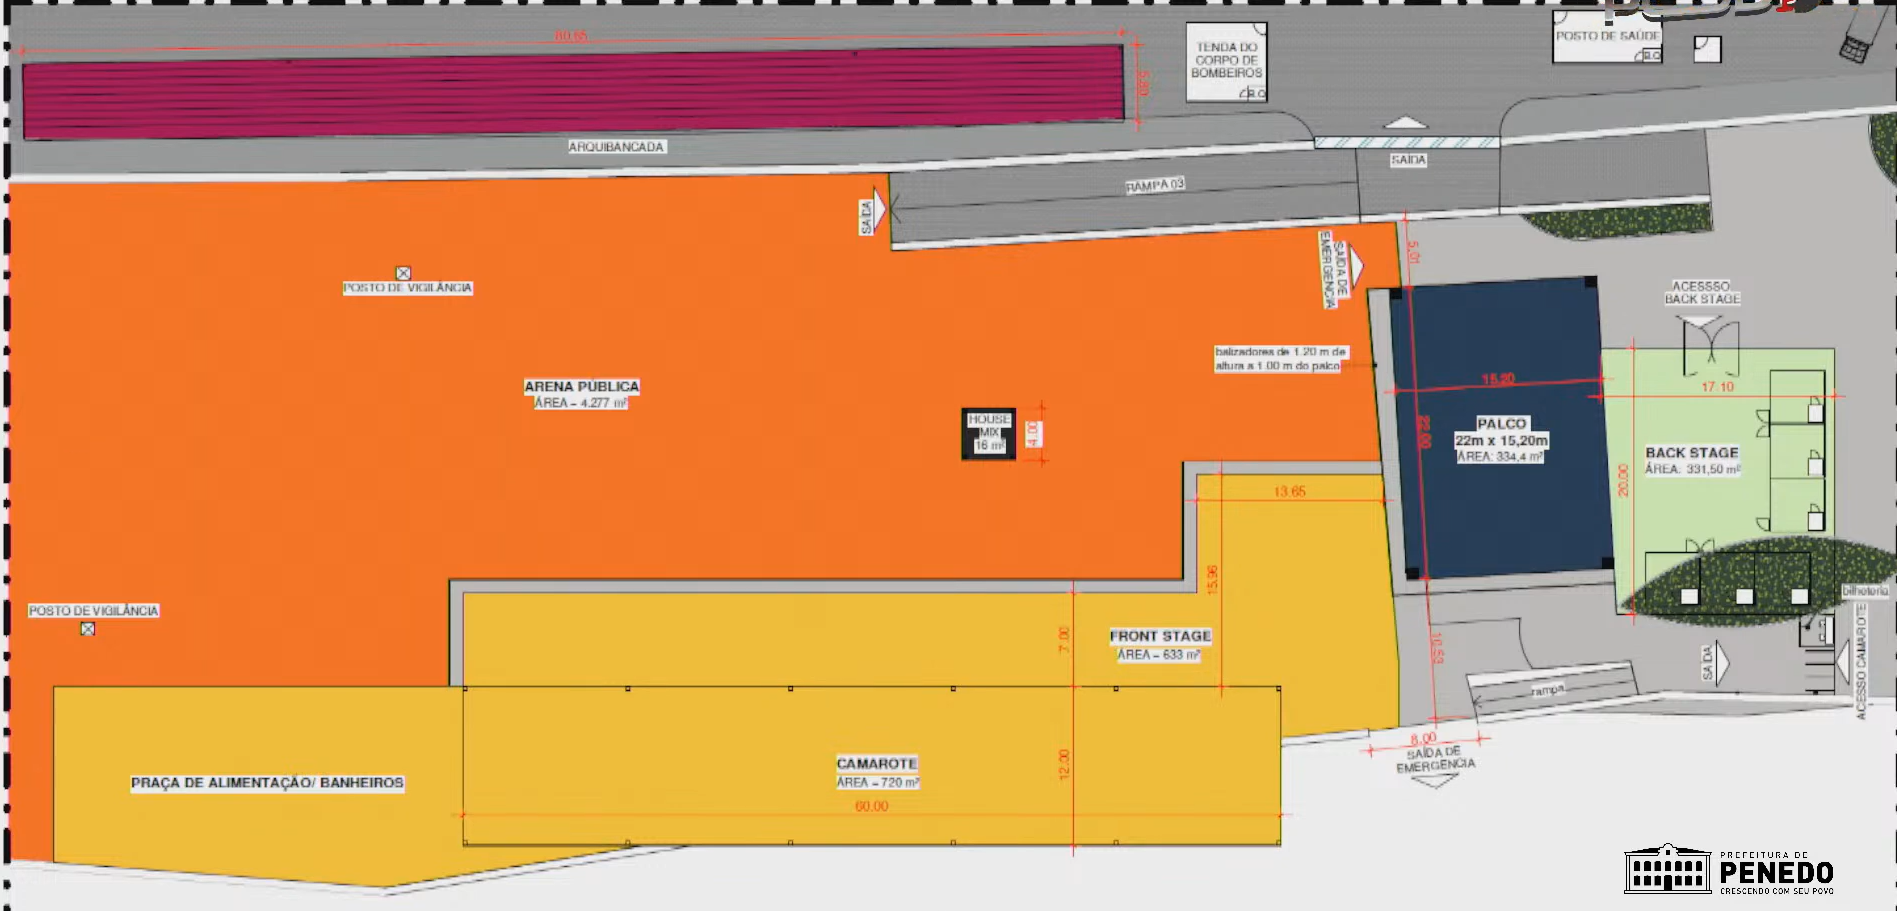 A área de acesso ao camarote está representada pela cor laranja.